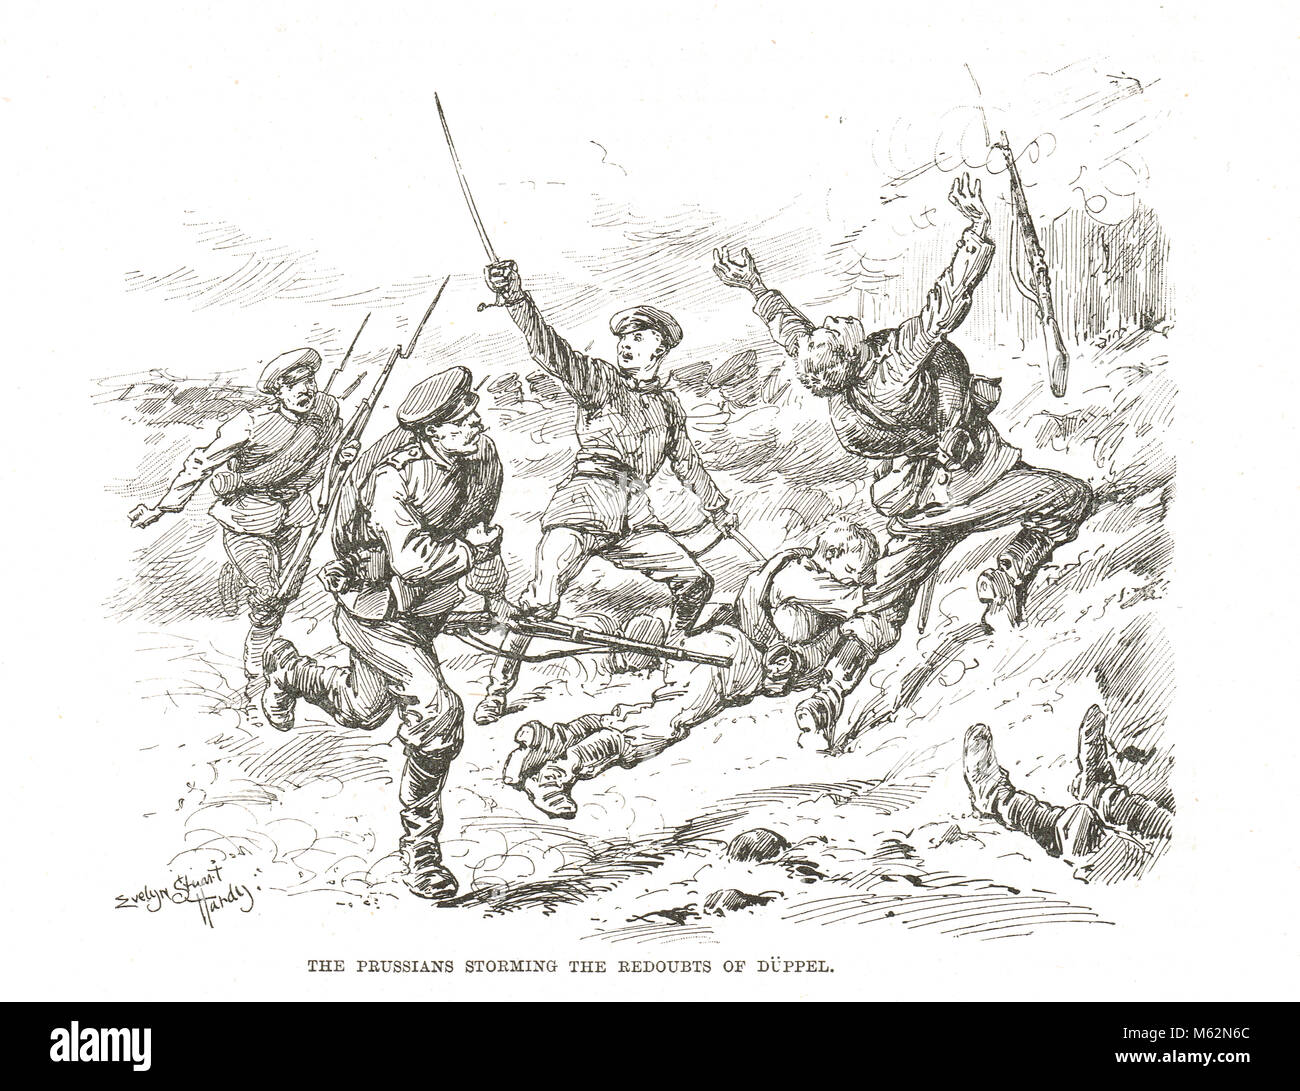 Les redoutes d'assaut Prussiens lors de la bataille de Dybbøl, également connu sous le nom de Duppel, clé de la Seconde Guerre des duchés, 18 avril 1864 Banque D'Images